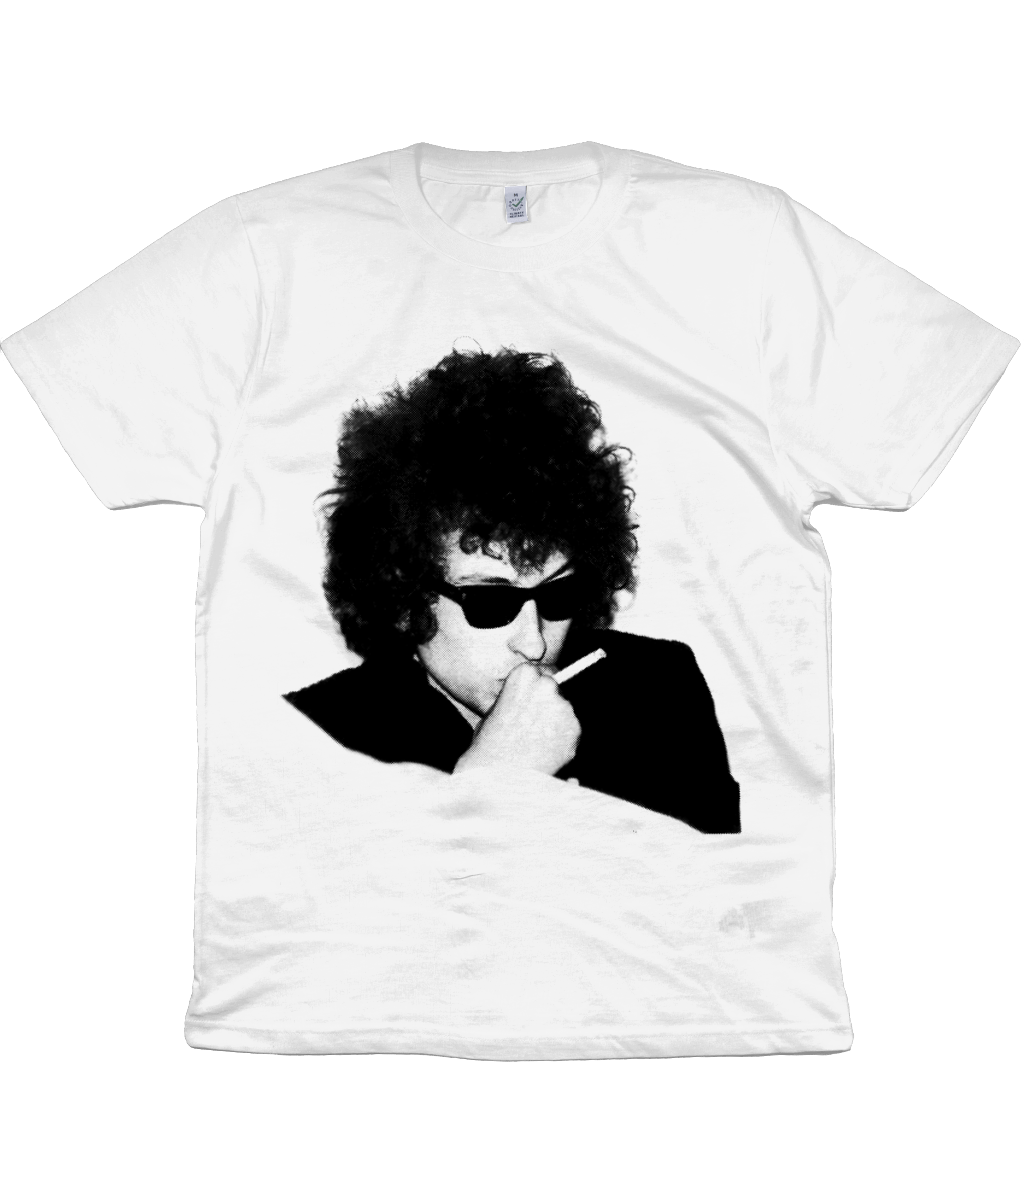 Bob Dylan - Sunglasses & Cigarette - 1966